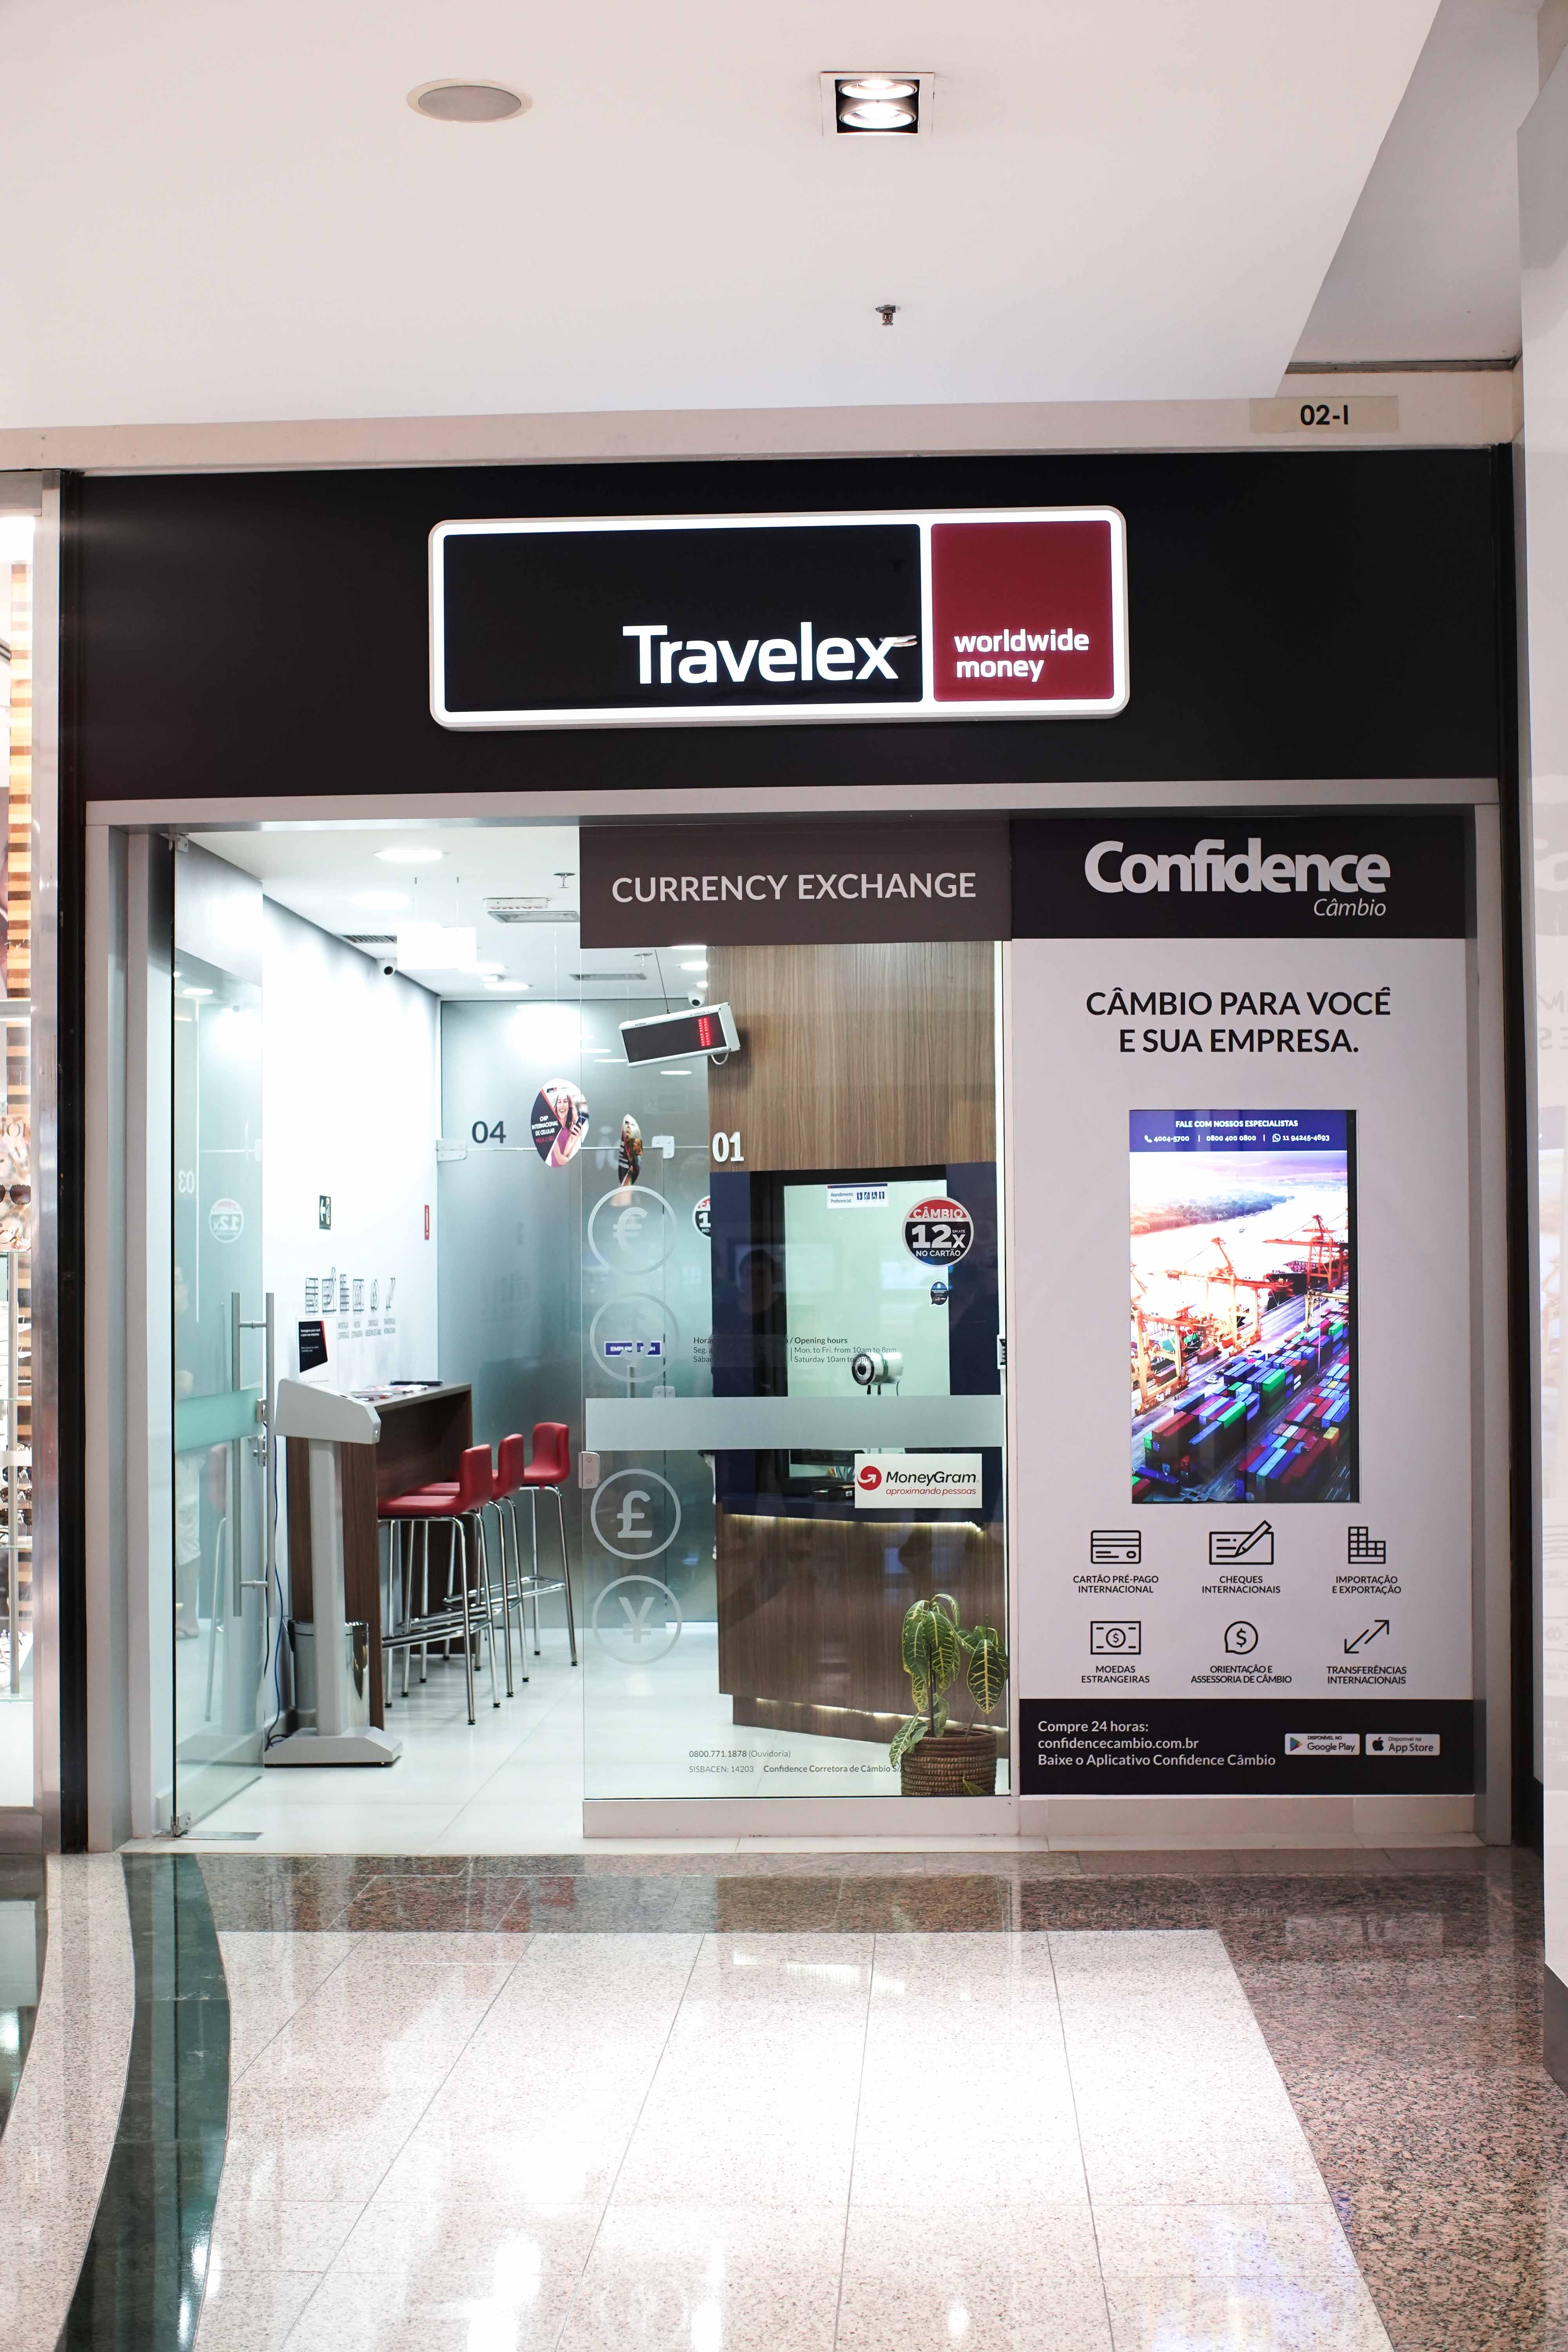 Travelex Confidence inaugura loja em Feira de Santana (BA)